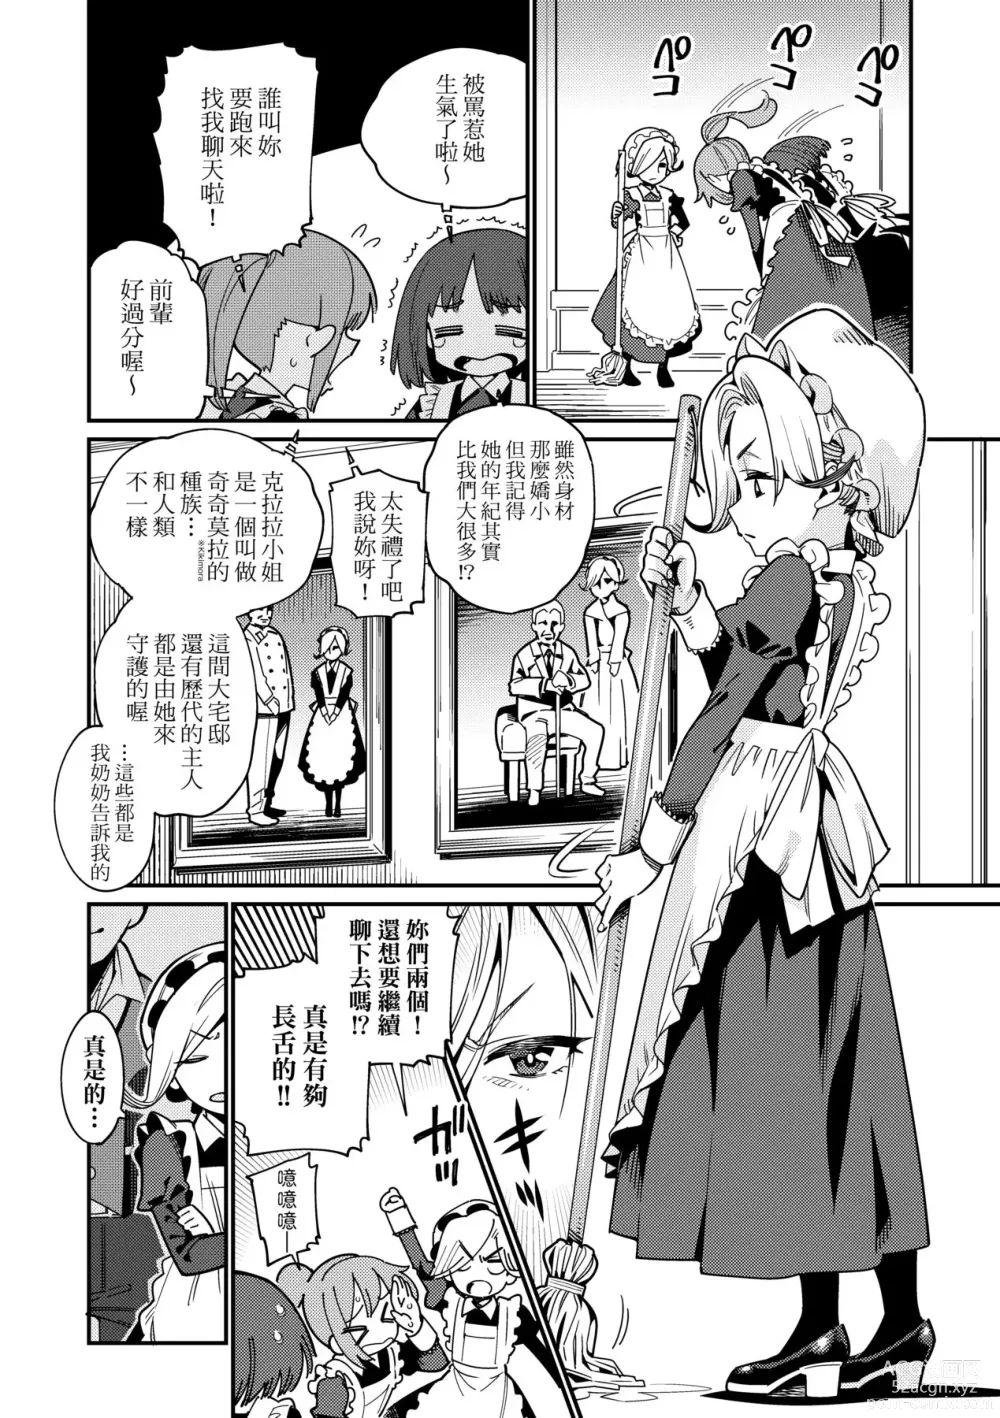 Page 7 of manga Itoshiki Wagaya (decensored)